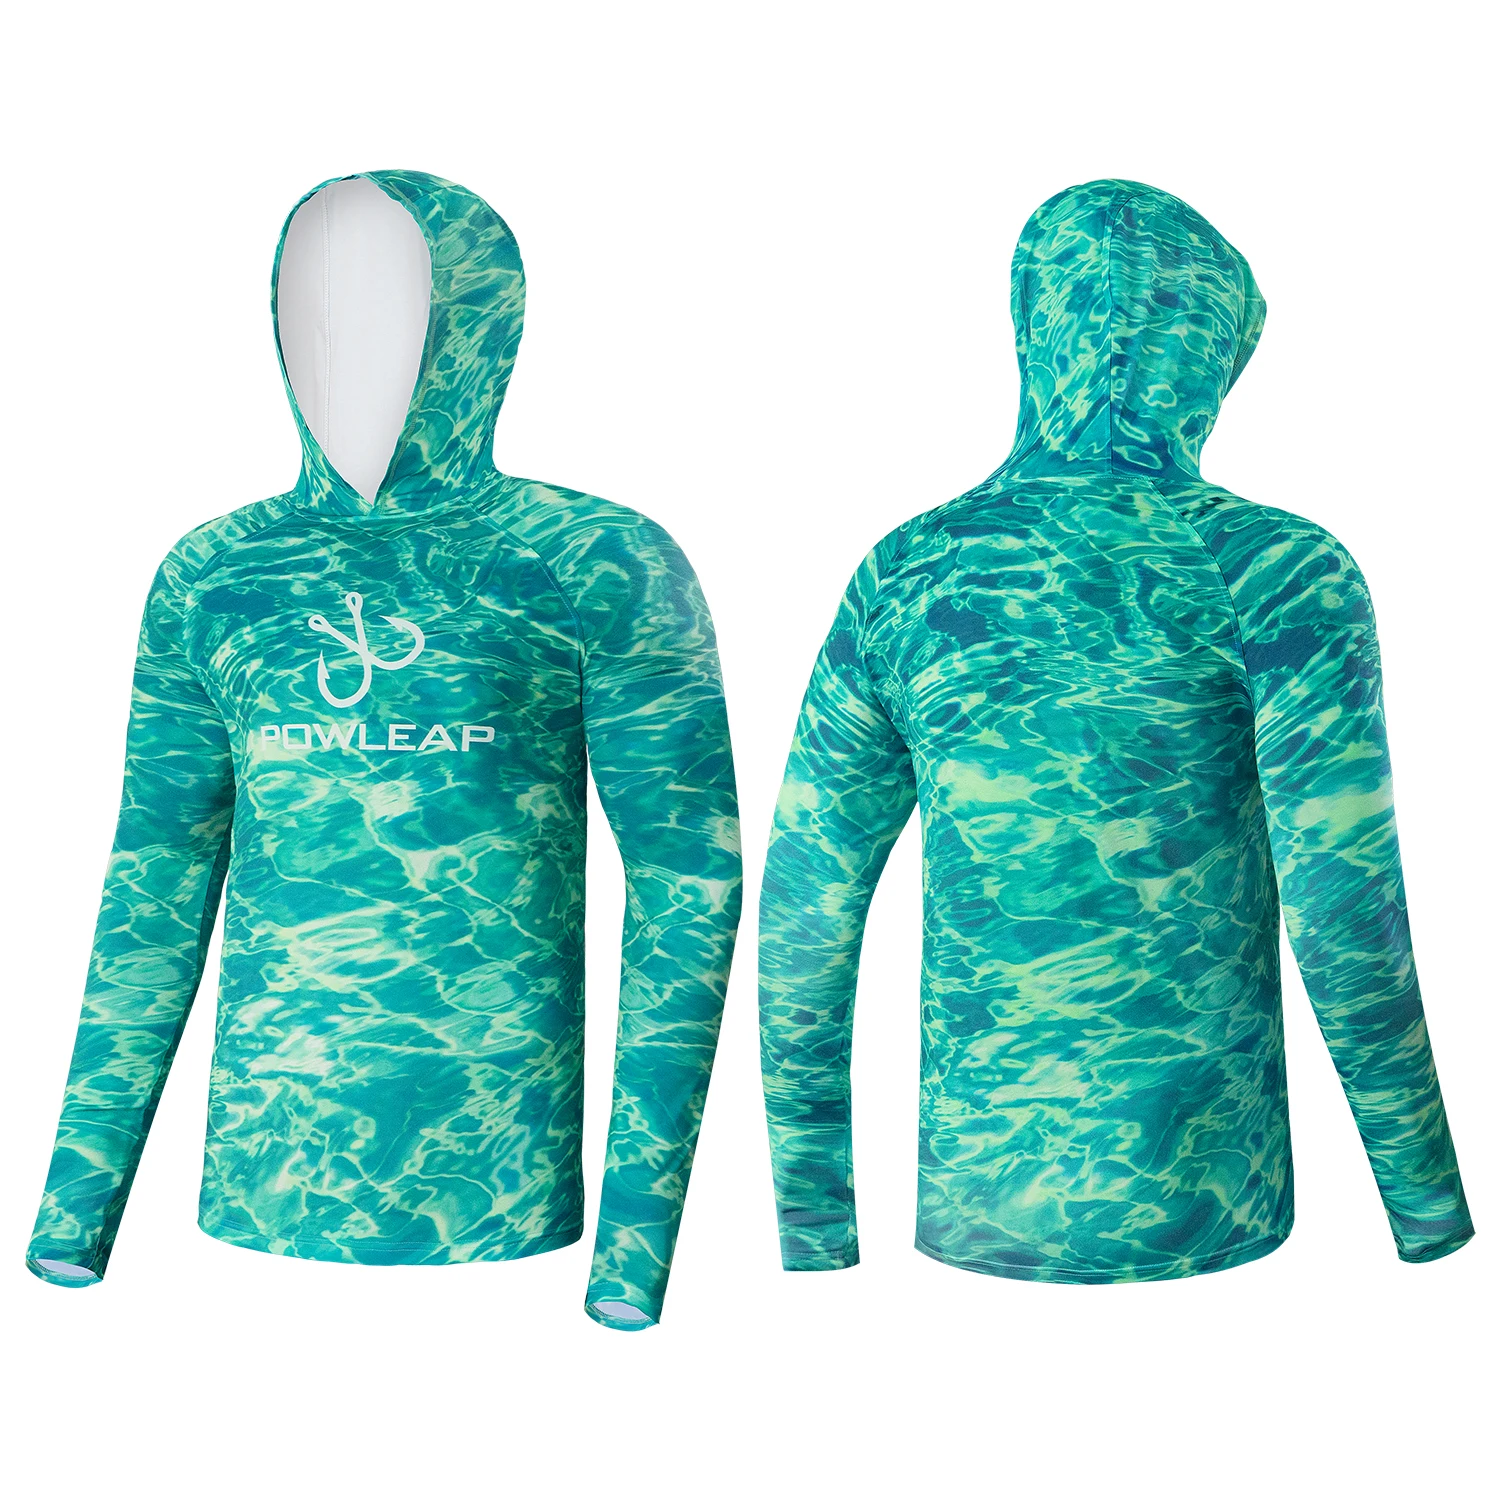 long sleeve comfort skin-friendly fishing hoodies